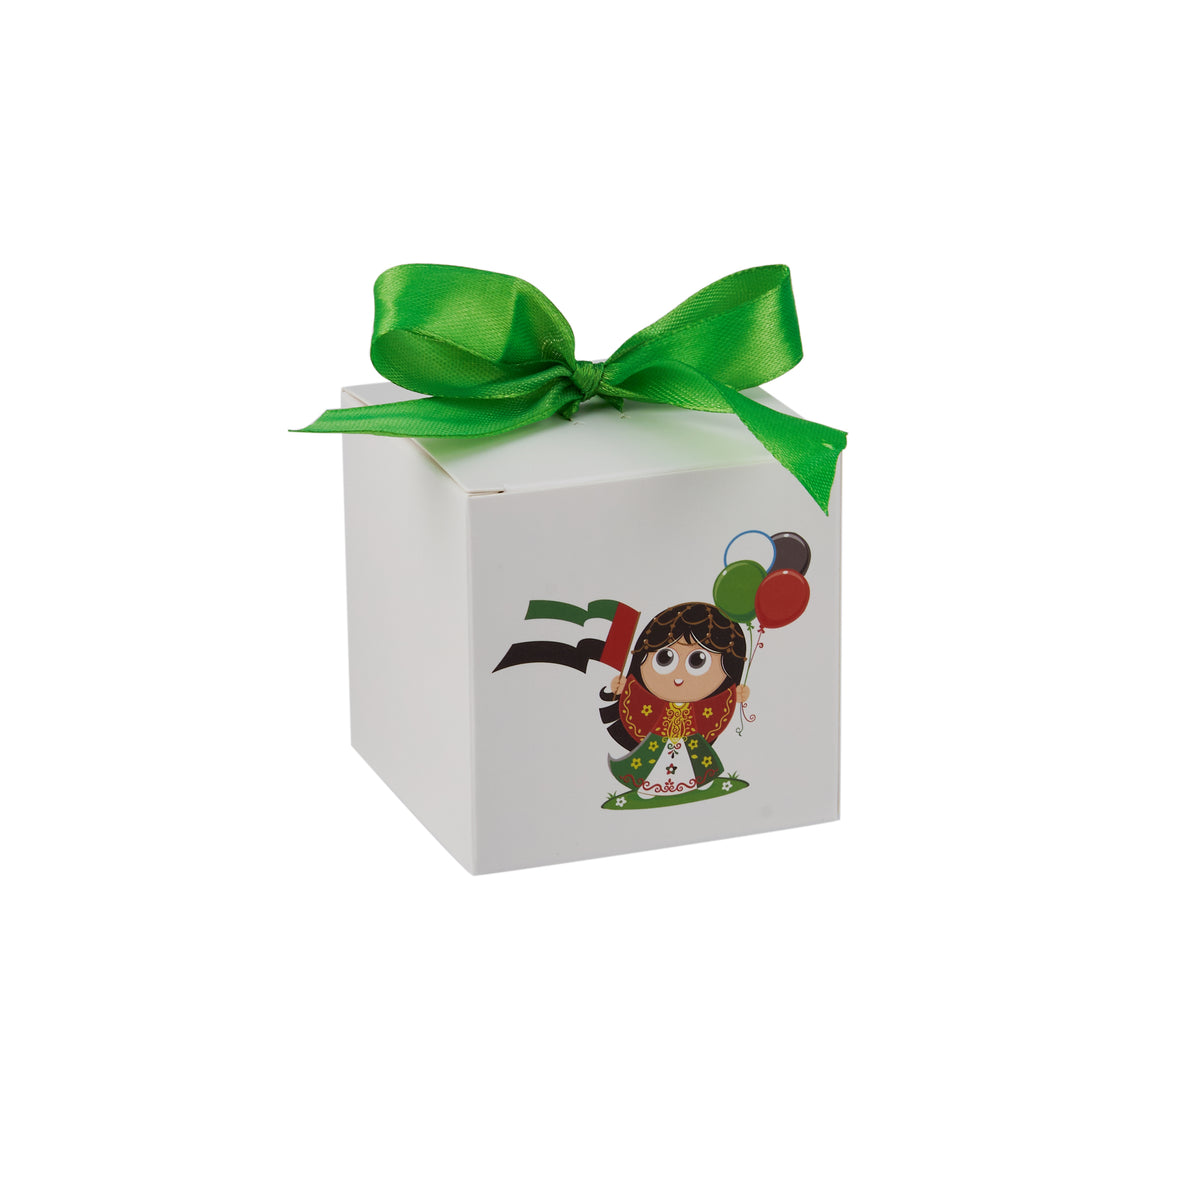 UAE National Day Gift Box - hotpackwebstore.com